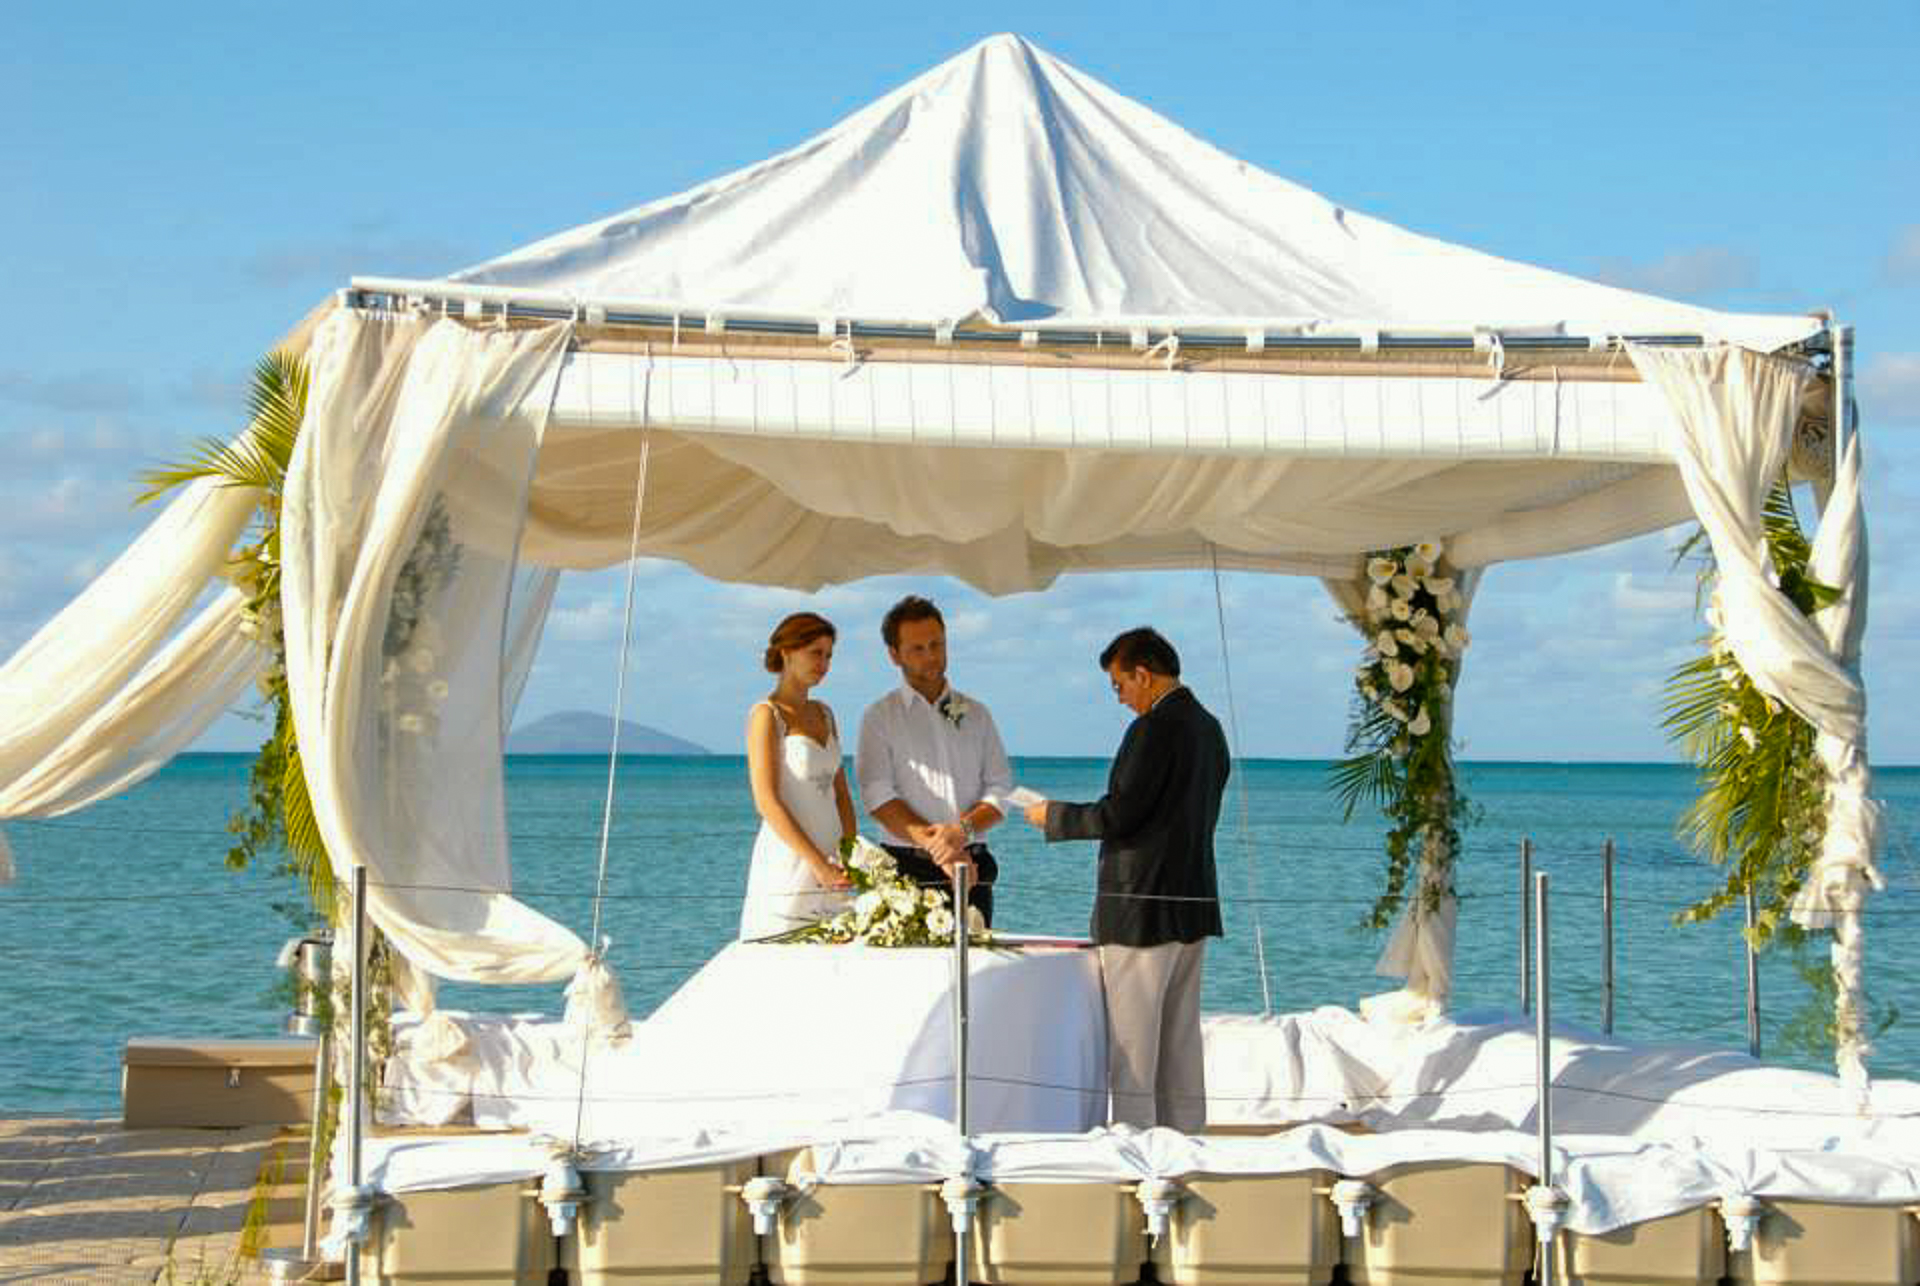 Mauritius Events, Eva Beumers, Monika Beumers, Heiraten auf Mauritius, Weddingplanner, Hochzeit auf einer schwimmenden Insel, Heiraten auf einem schwimmenden Hochzeitspavillion